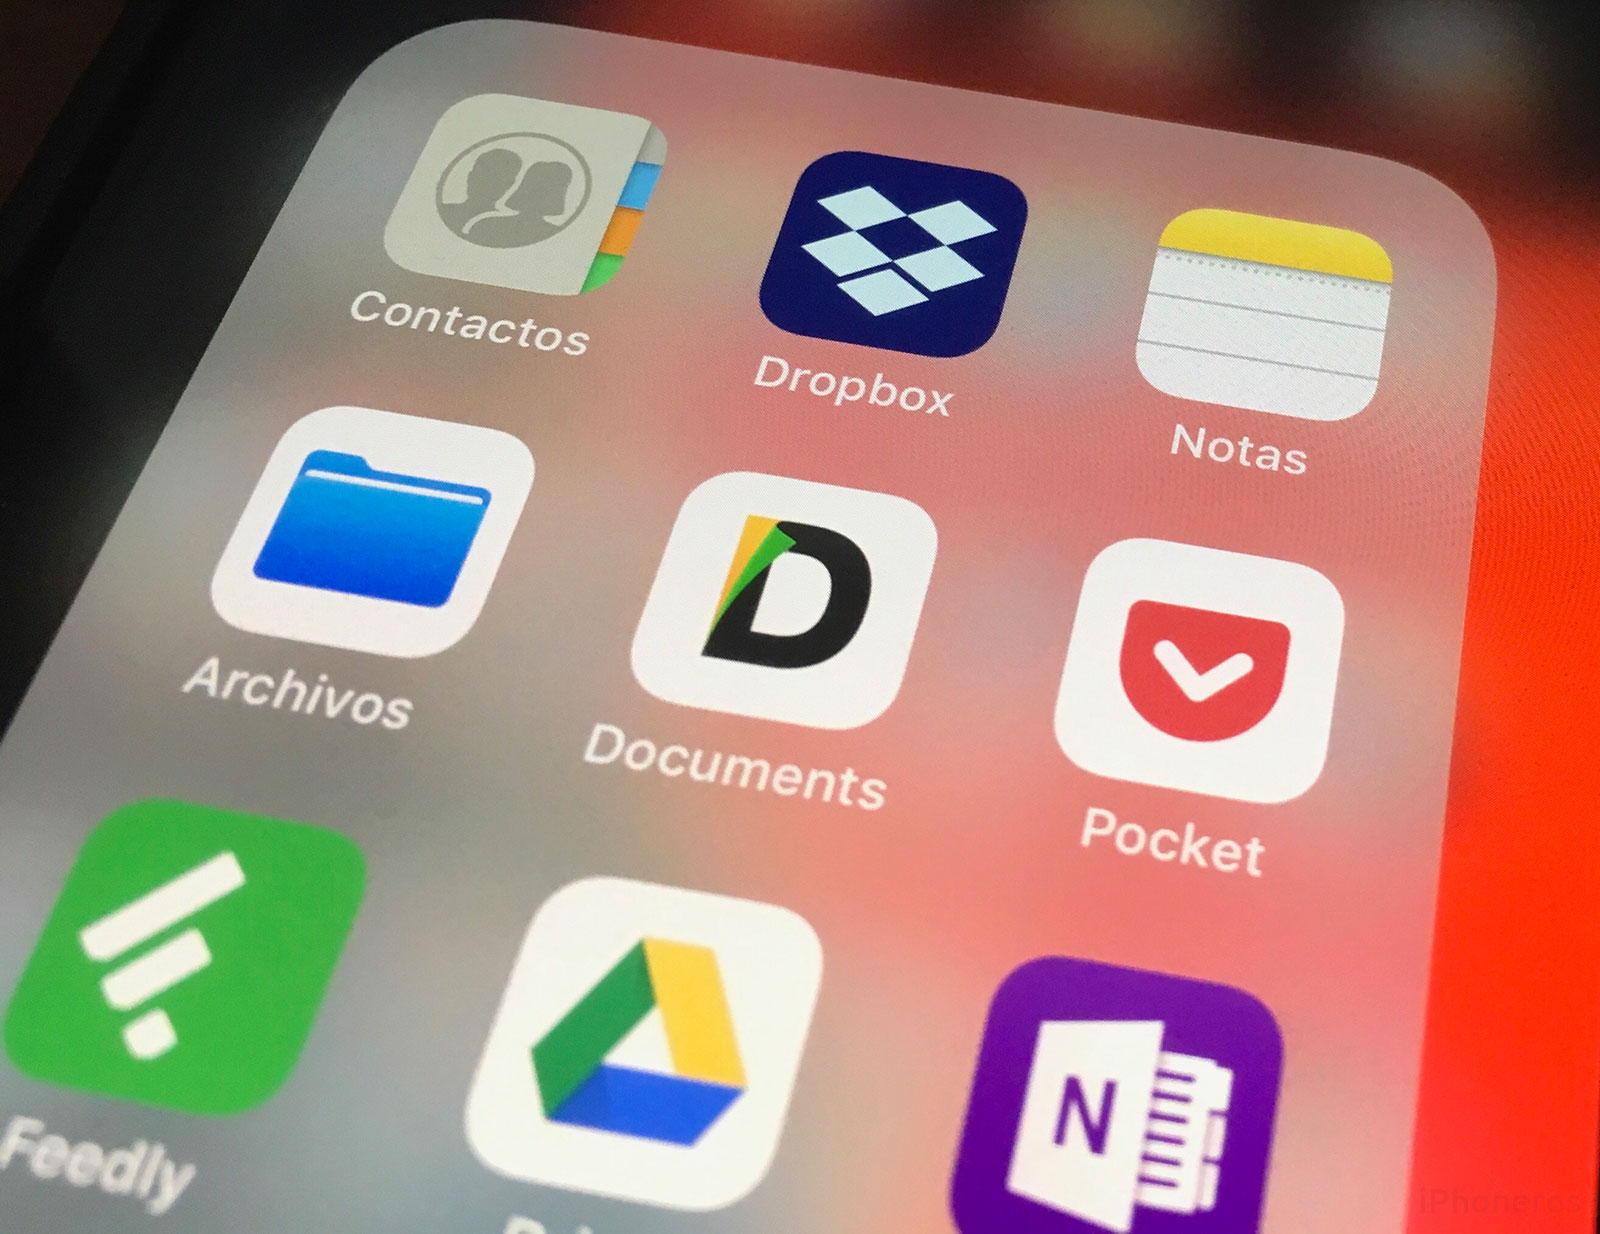 App de Notas, Dropbox y Contactos